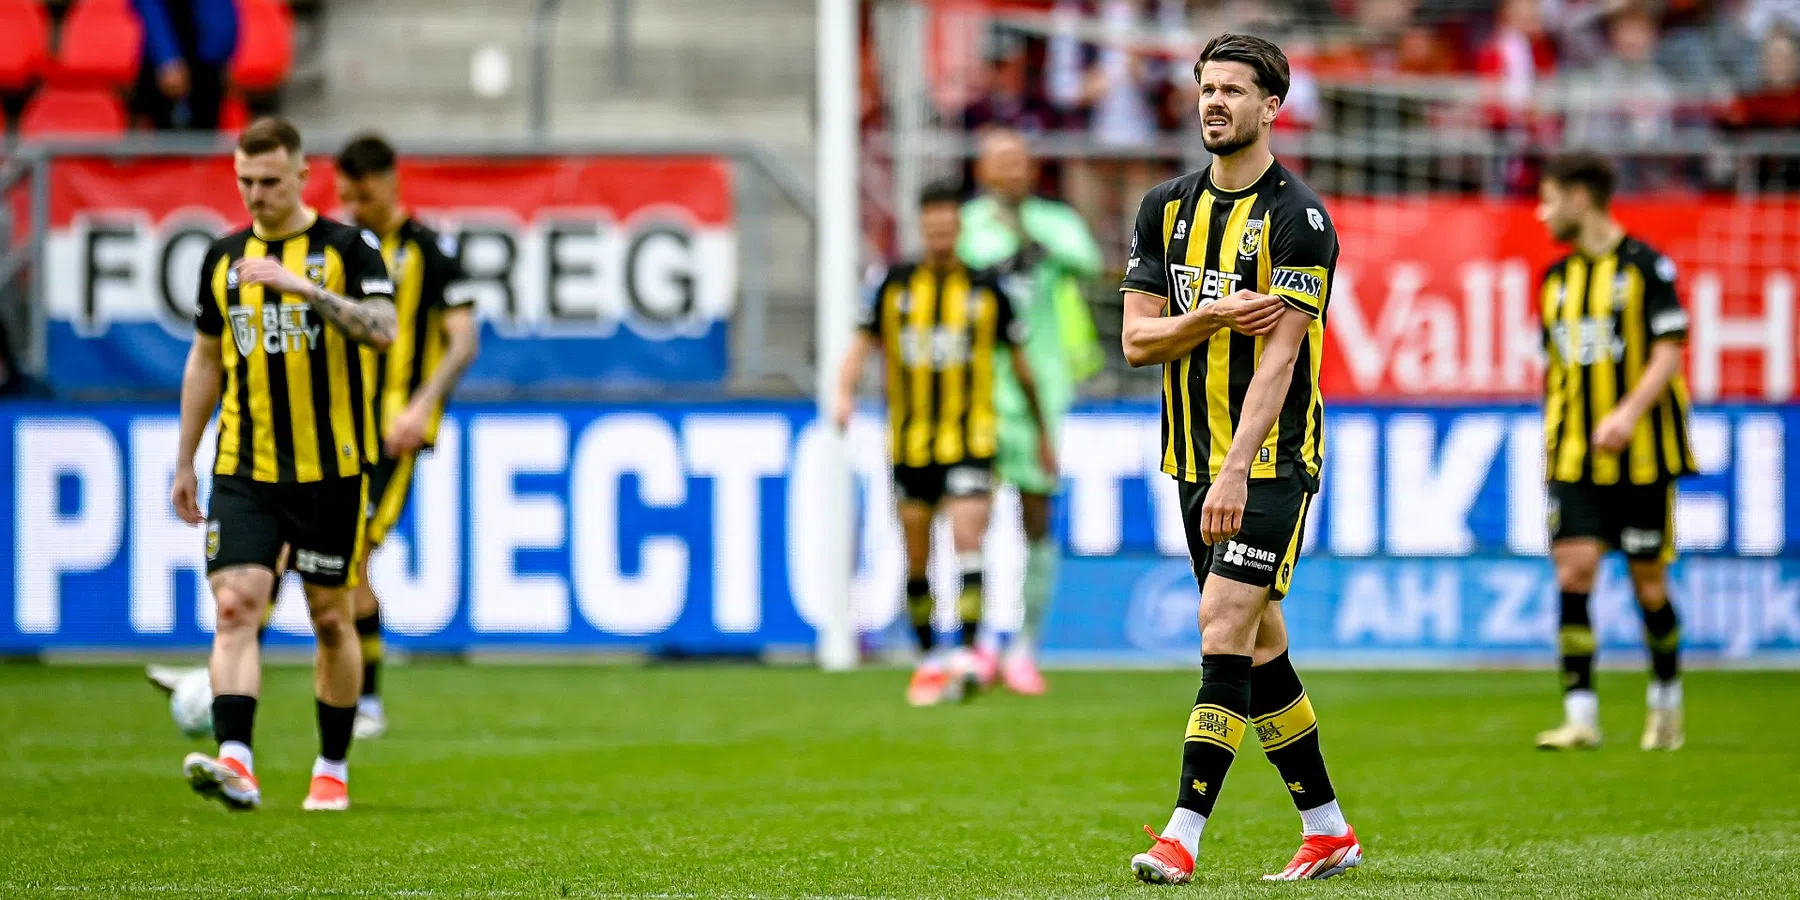 Ondanks mislukte poging geeft Schouten de hoop op overname van Vitesse niet op